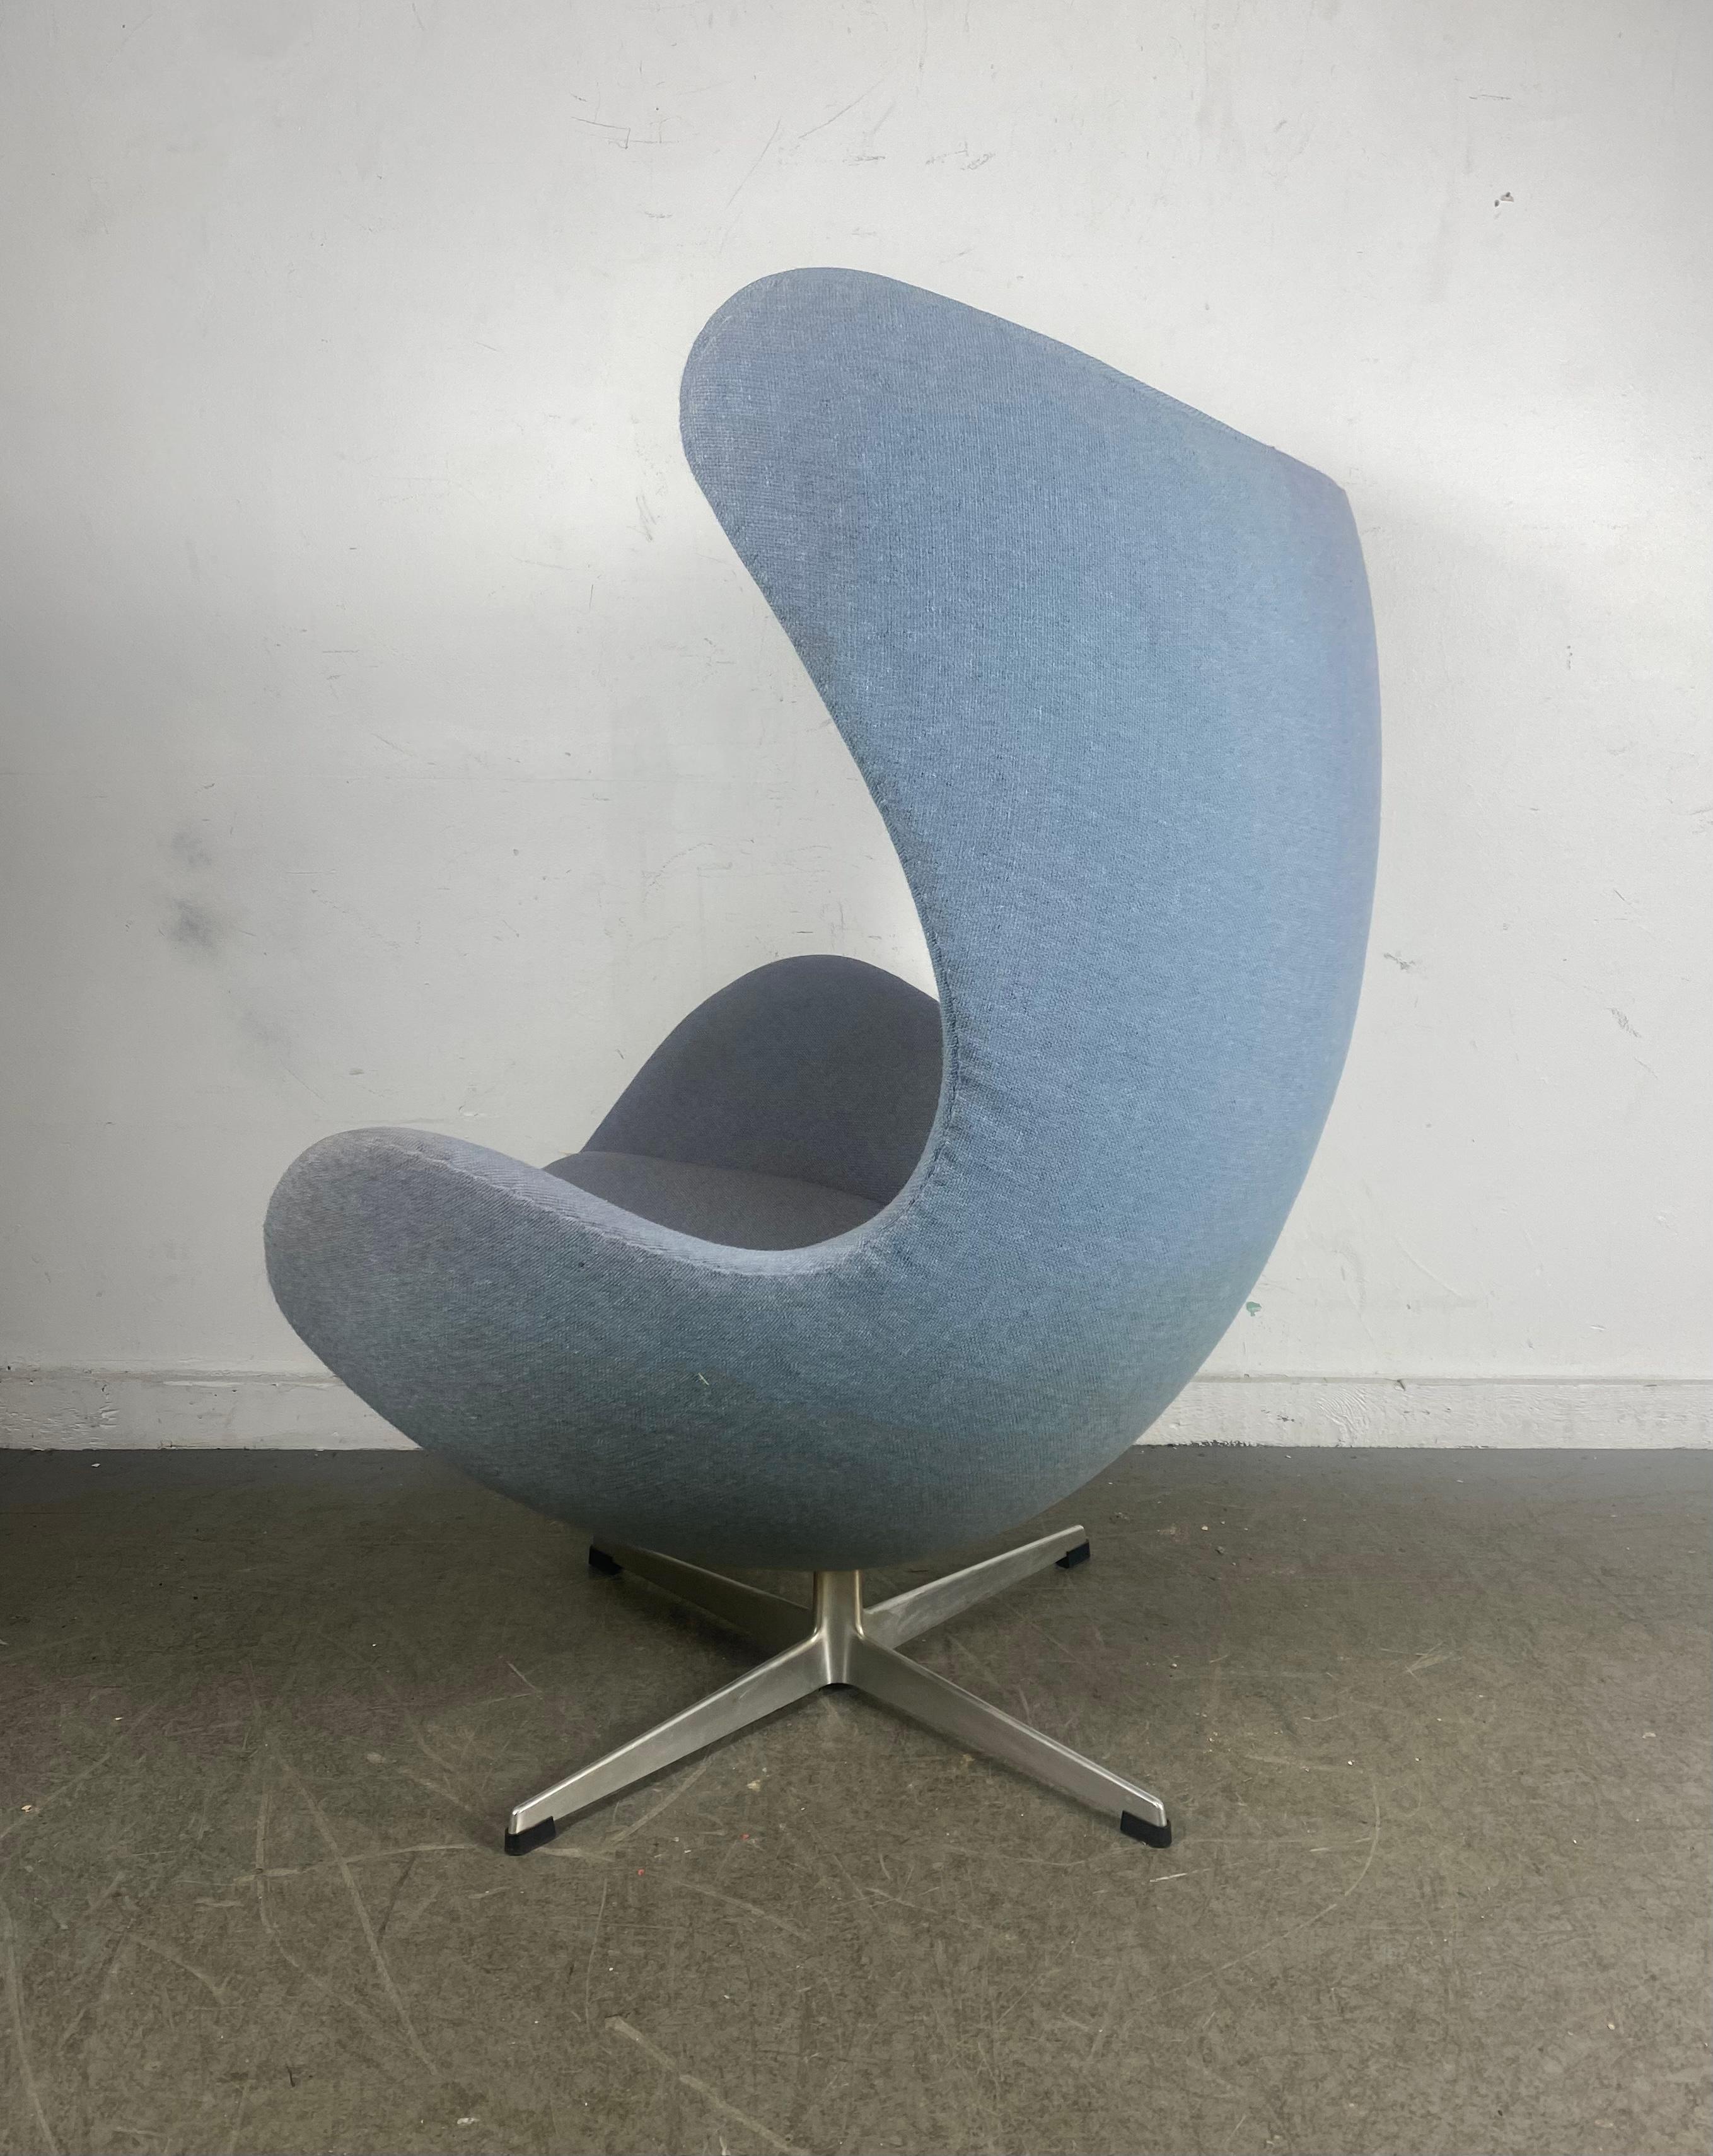 Danish Classic 1960s  Egg Chair designed by Arne Jacobsen for Fritzhansen / Denmark